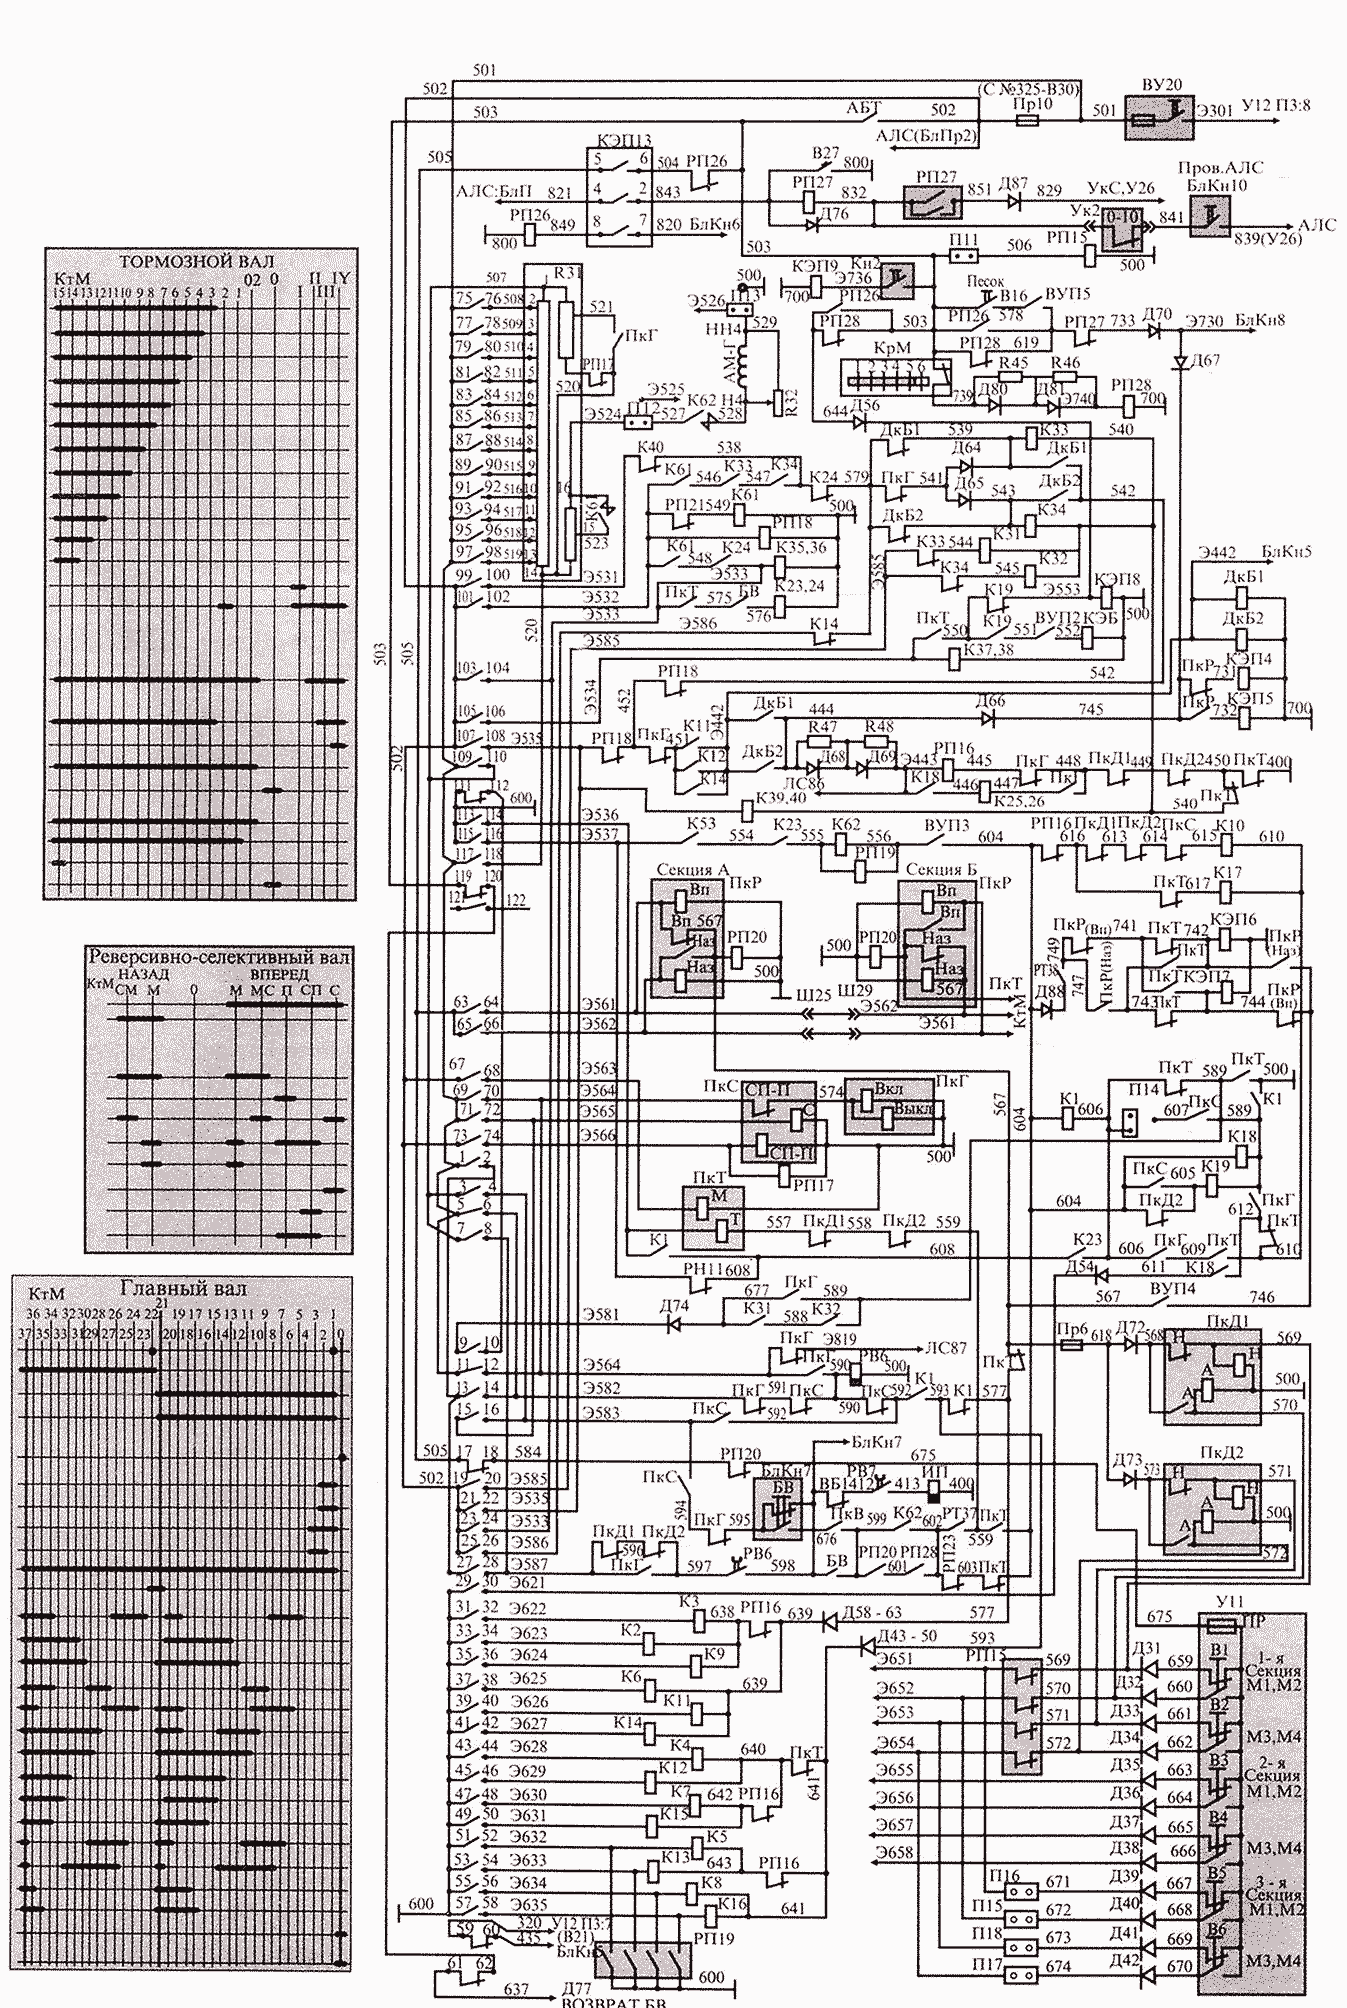 Схема цепей управления электровоза ВЛ 11